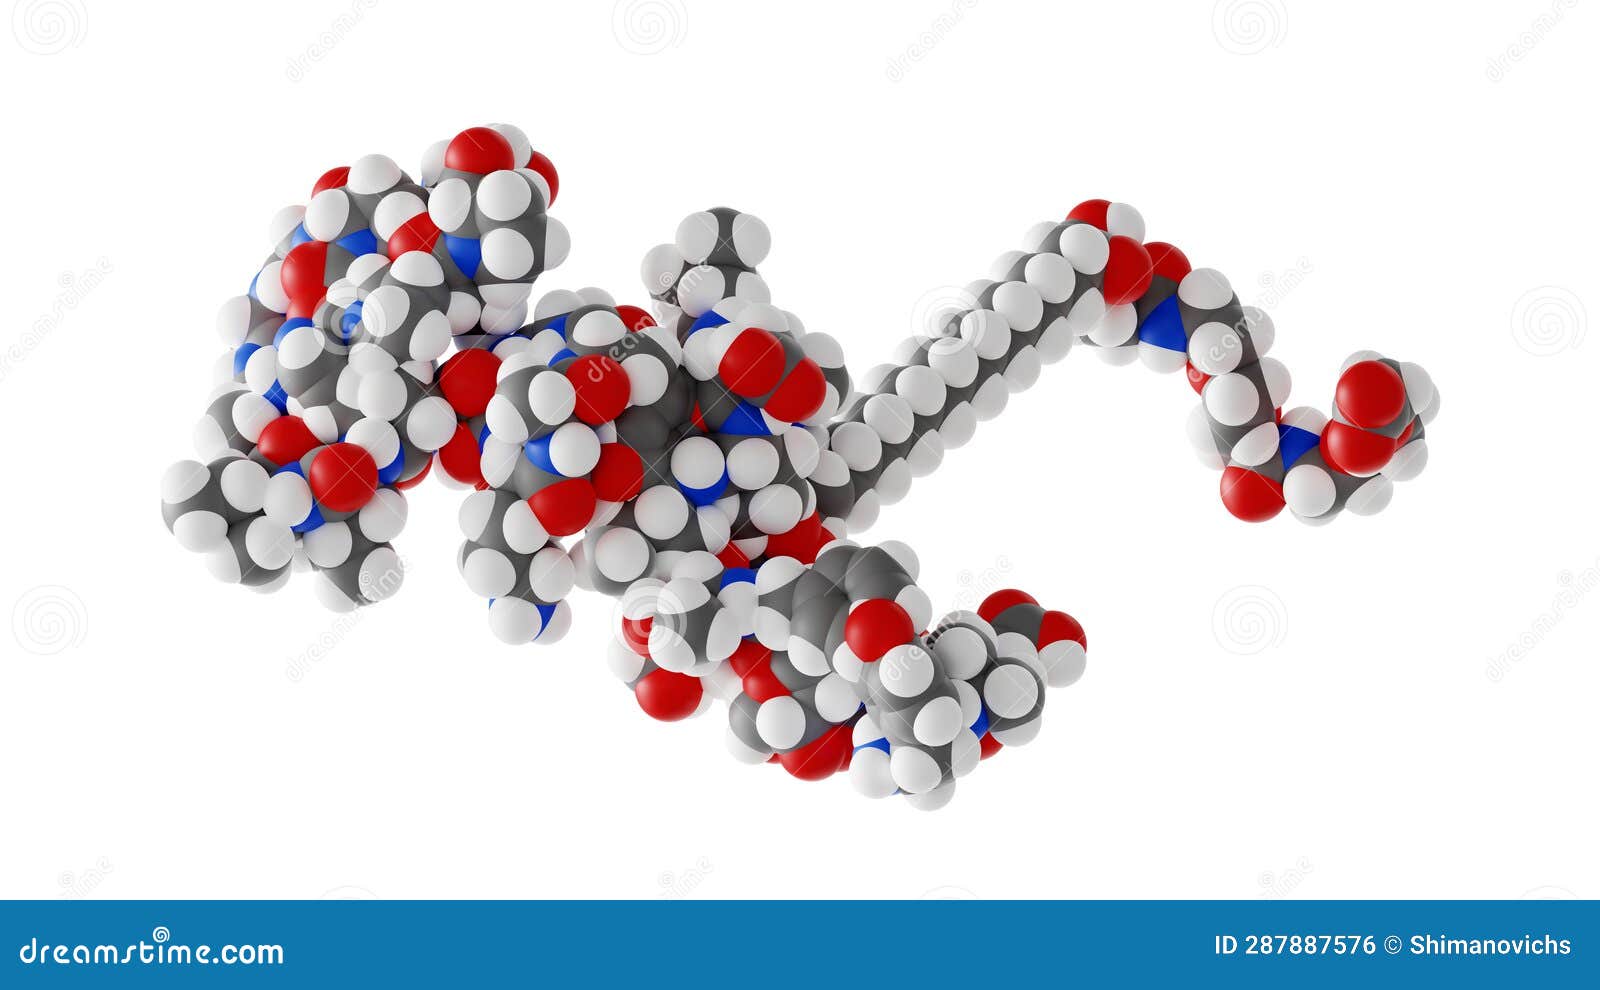 tirzepatide molecule, mounjaro molecular structure,  3d model van der waals